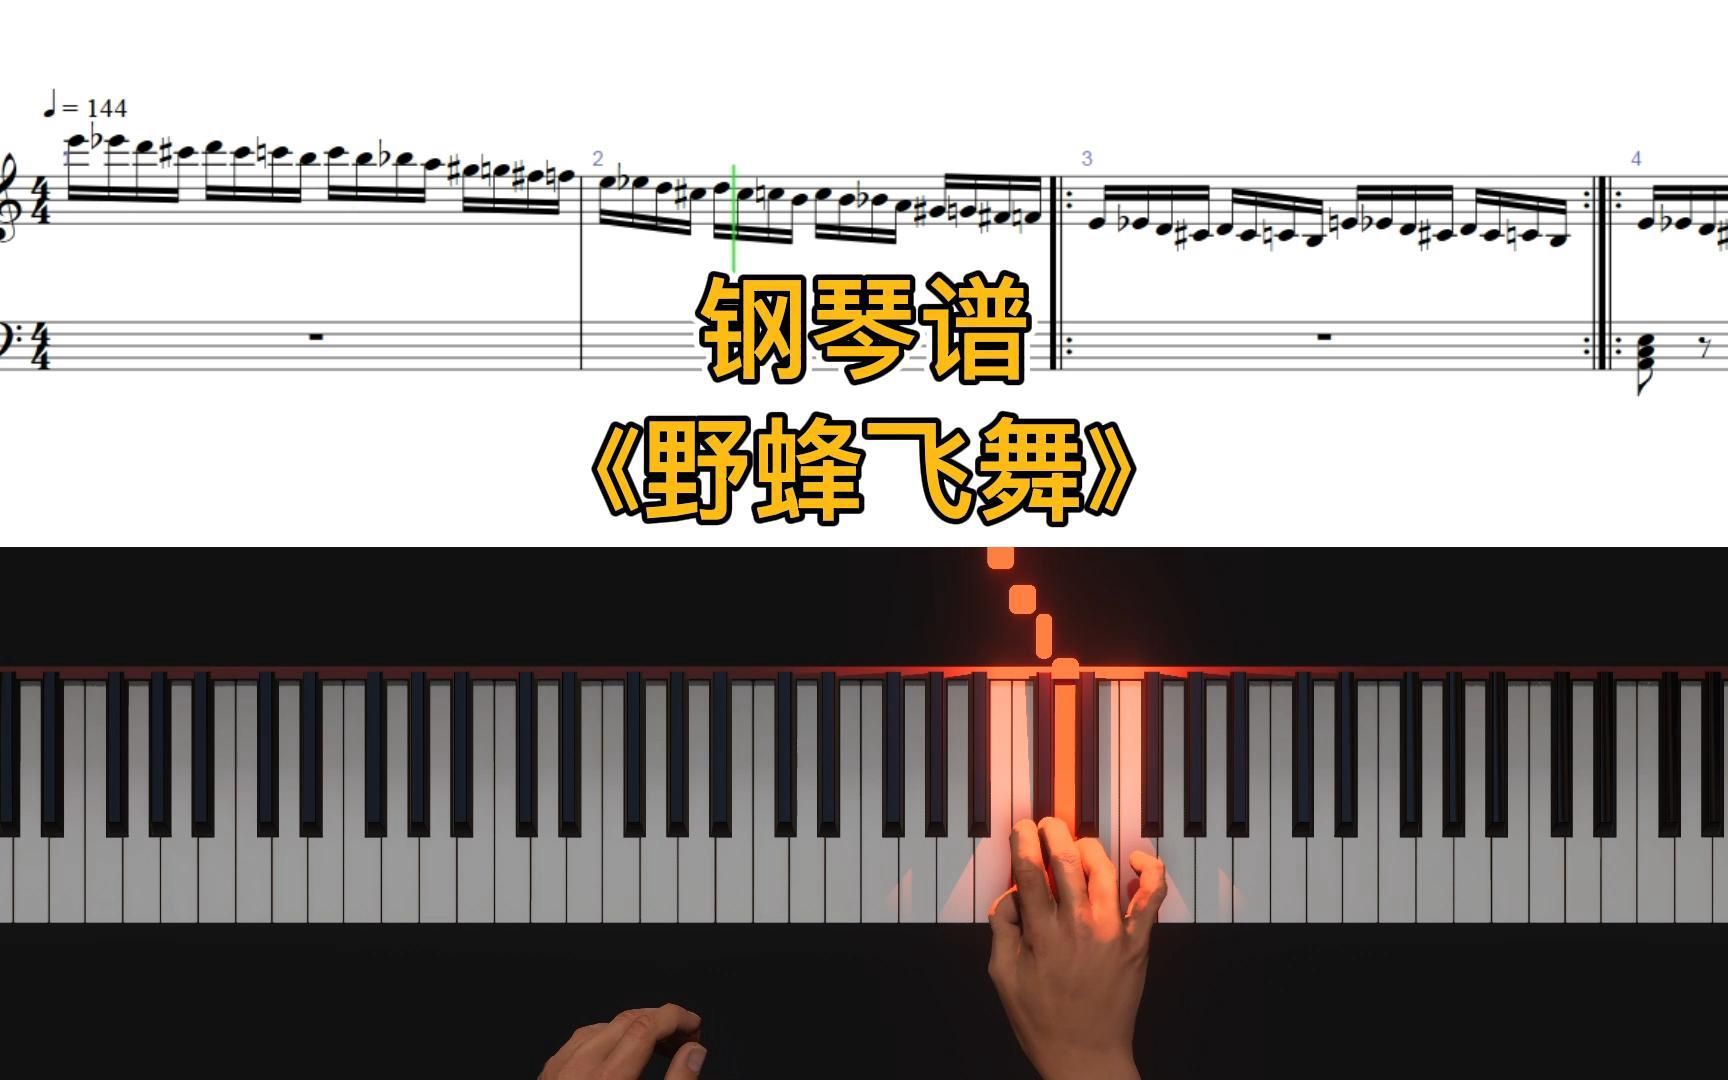 【钢琴谱】野蜂飞舞 带指法 亲测顺手可弹完整版